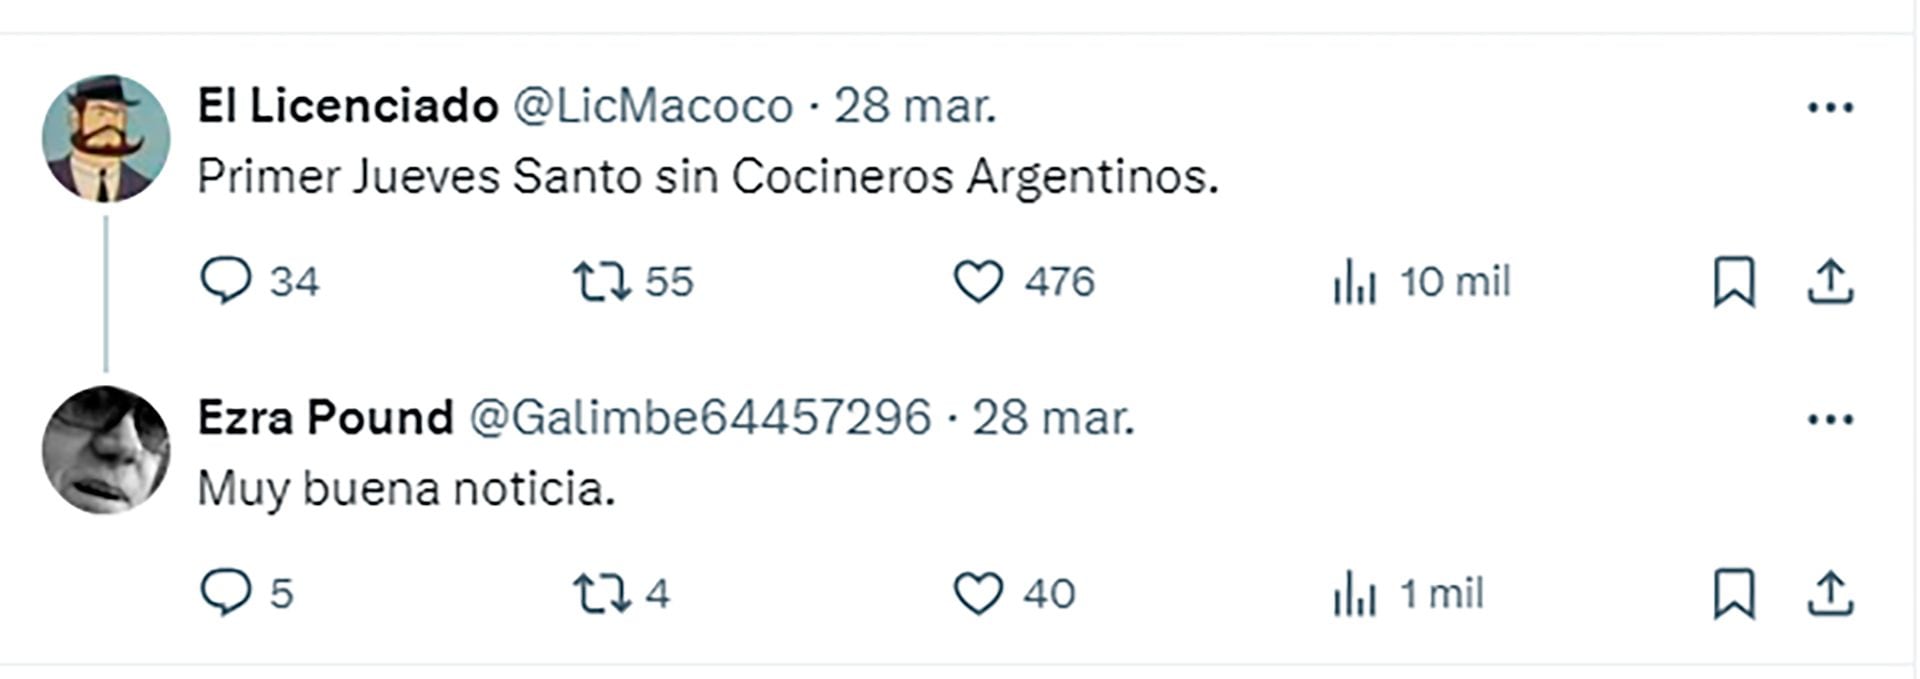 Andrés Calamaro vs Cocineros Argentinos: el tuit disparador de la polémica